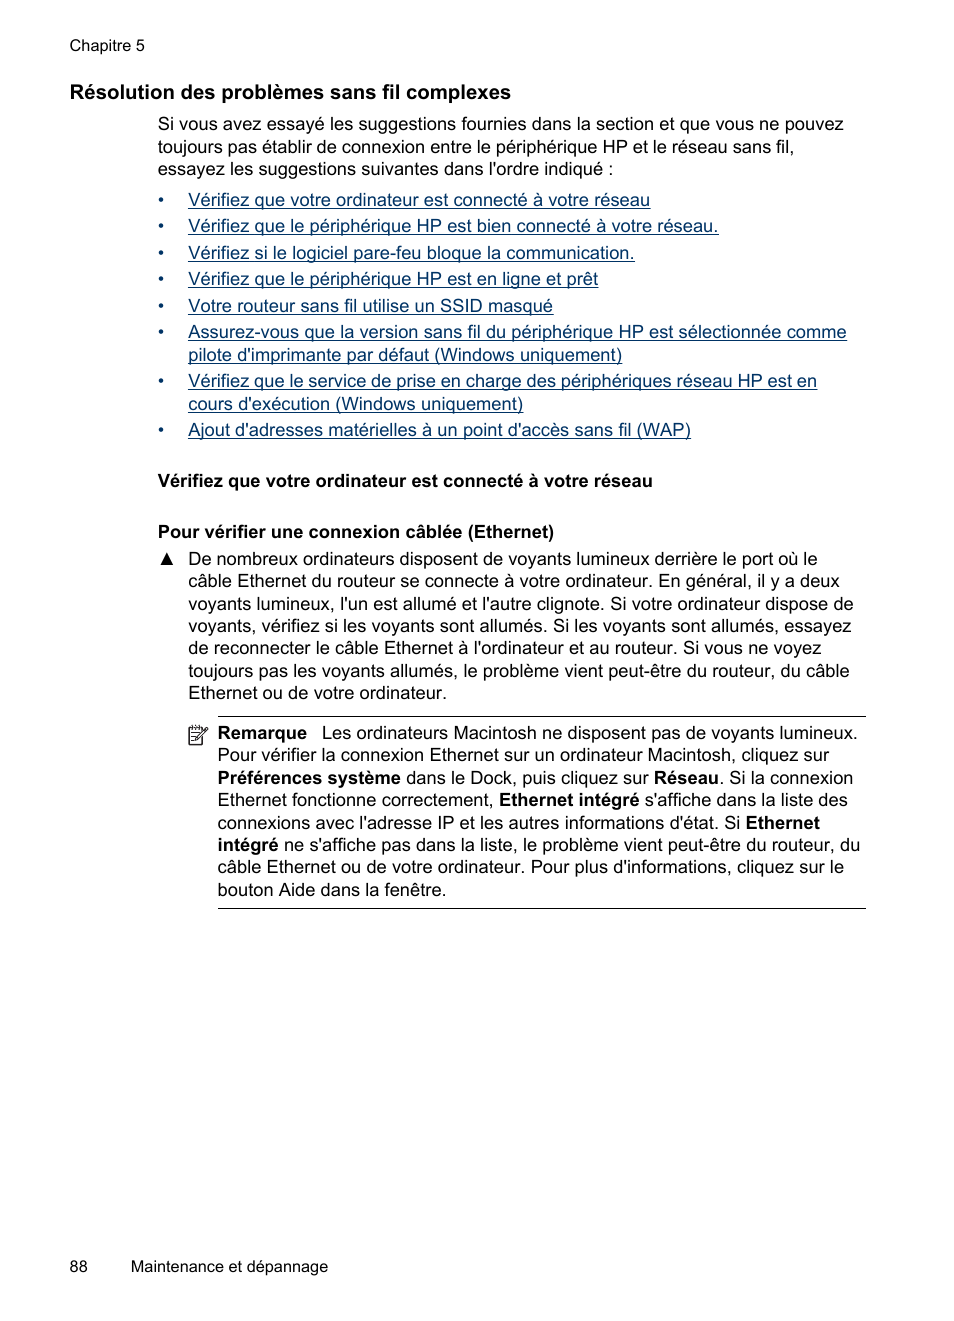 Résolution des problèmes sans fil complexes | HP Officejet Pro 8000 - A809 Manuel d'utilisation | Page 92 / 154